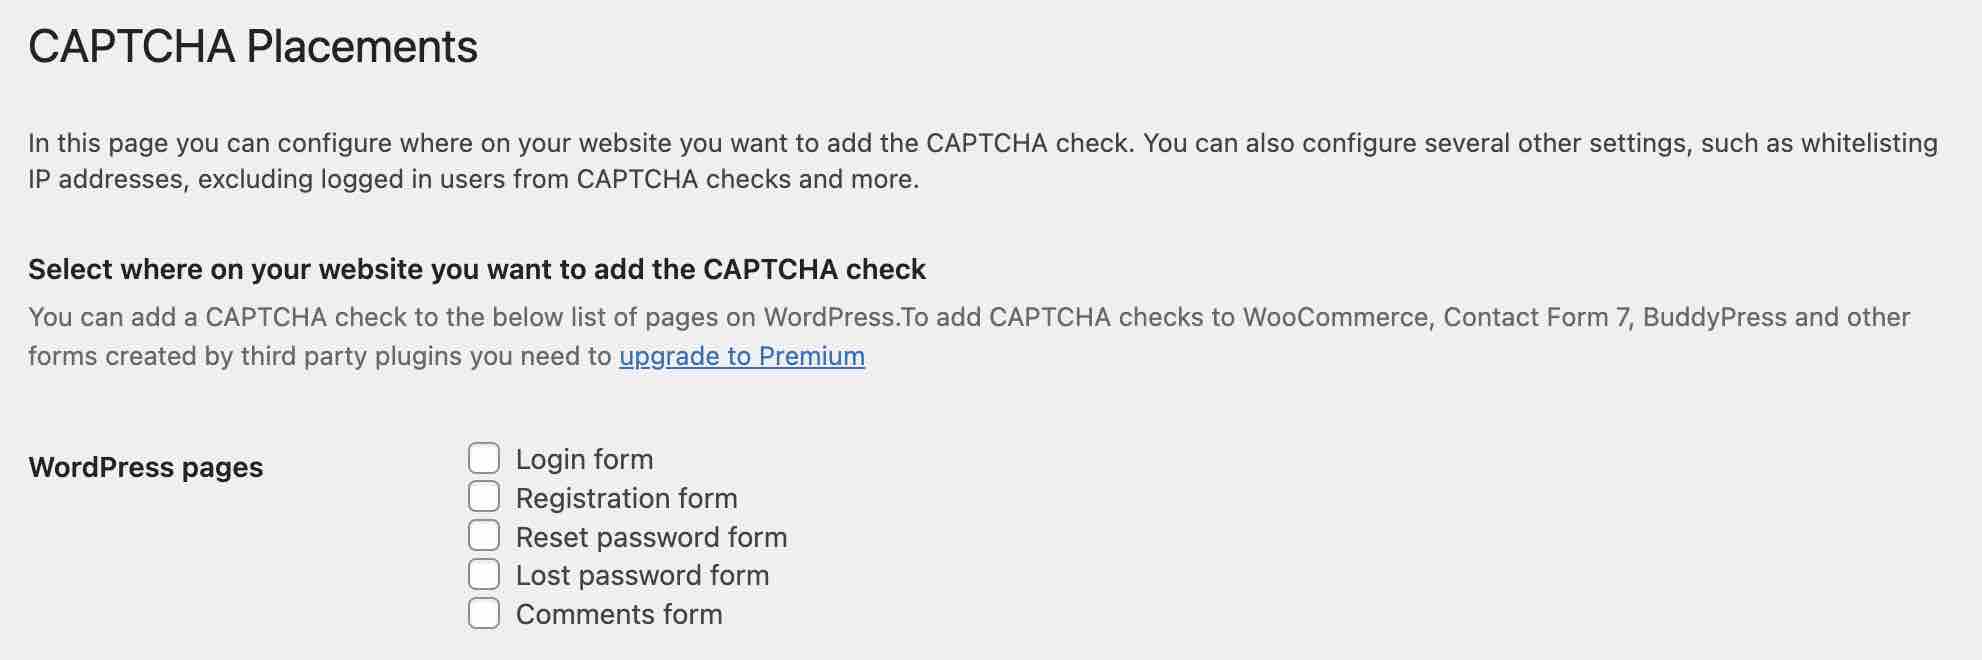 CAPTCHA 4WP peut être activé sur différents formulaires.